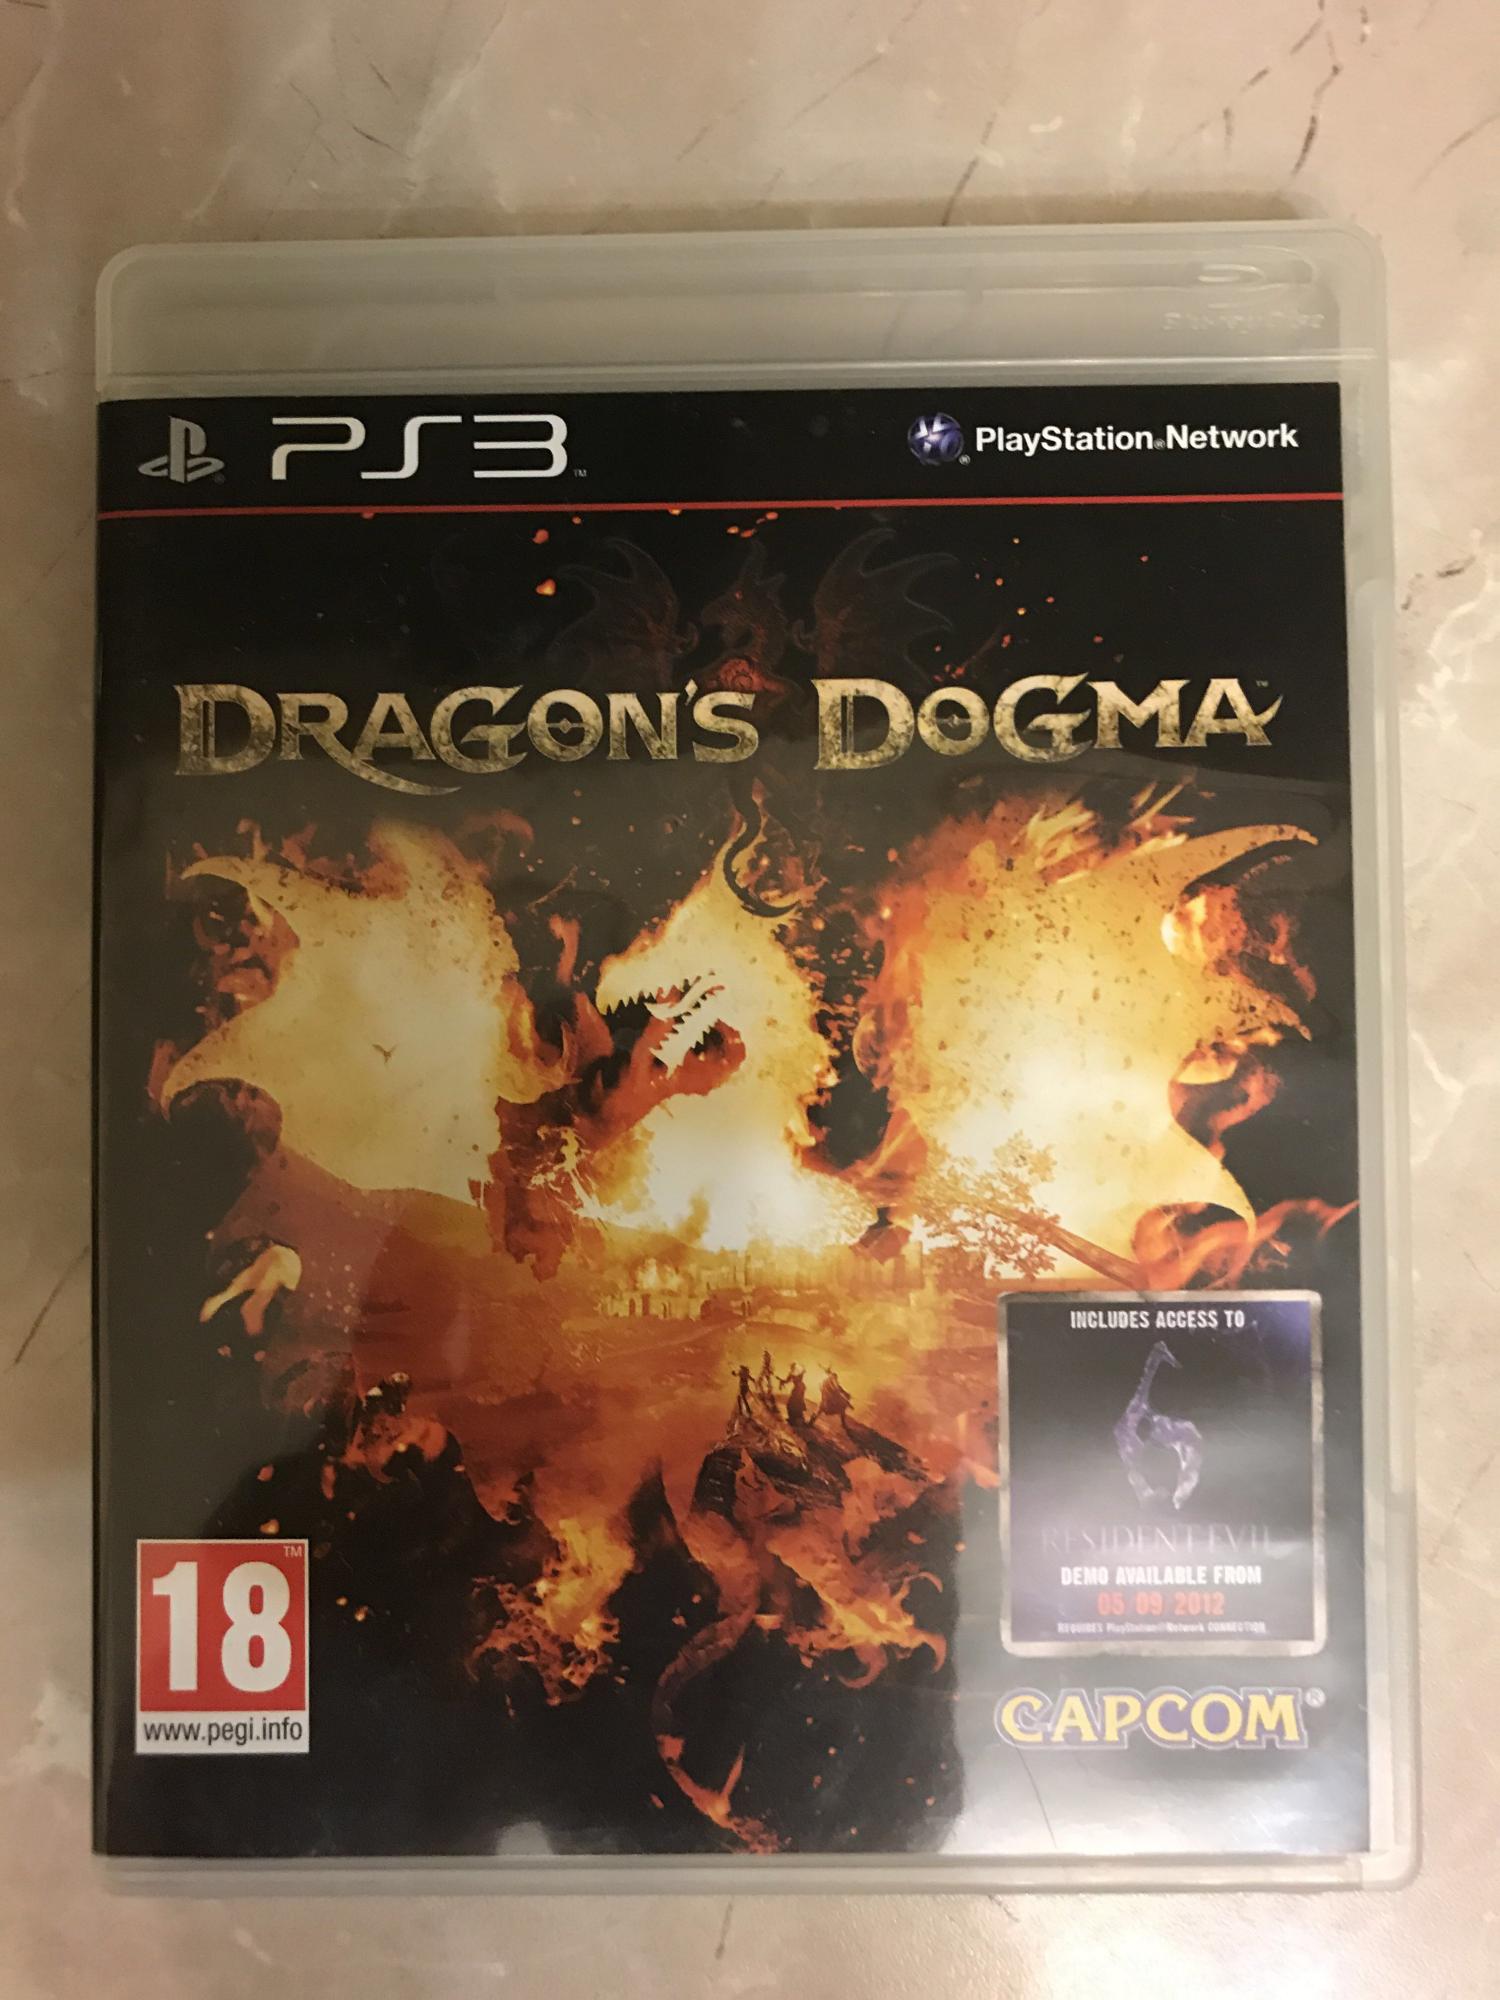 Dragons dogma 2 купить ps5 диск. Dragons Dogma ps3 диск. Драгон с Догма пс4.